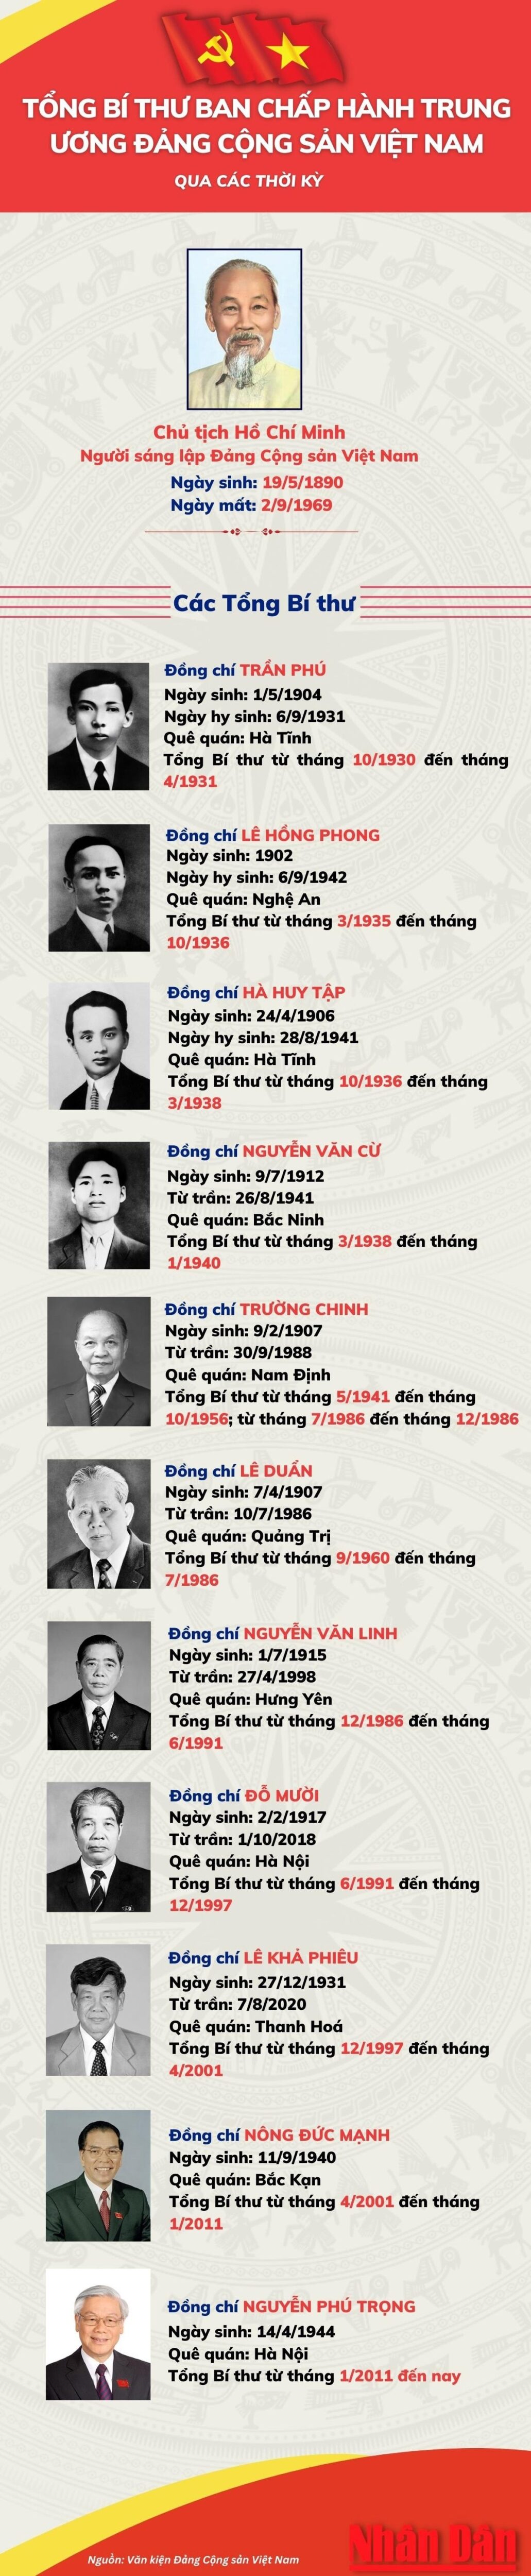 113 Tổng Bí thư Đảng Cộng sản Việt Nam qua các thời kỳ mới nhất